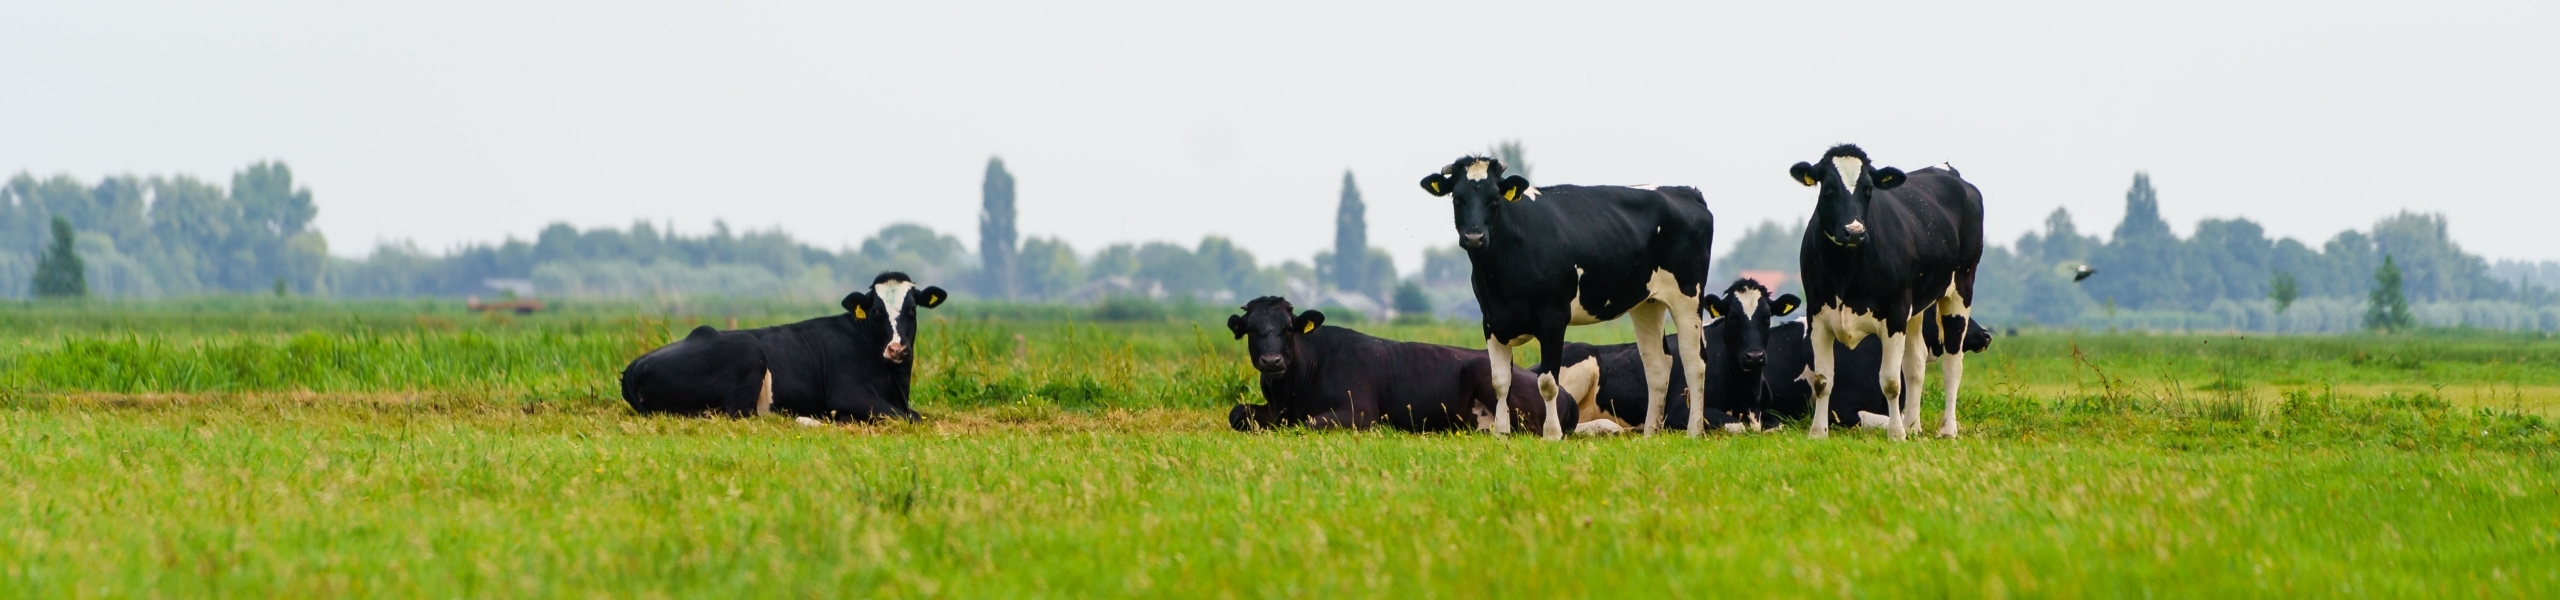 Een groepje koeien staat in een fris, groen weiland met op de achtergrond de countouren van bebouwing